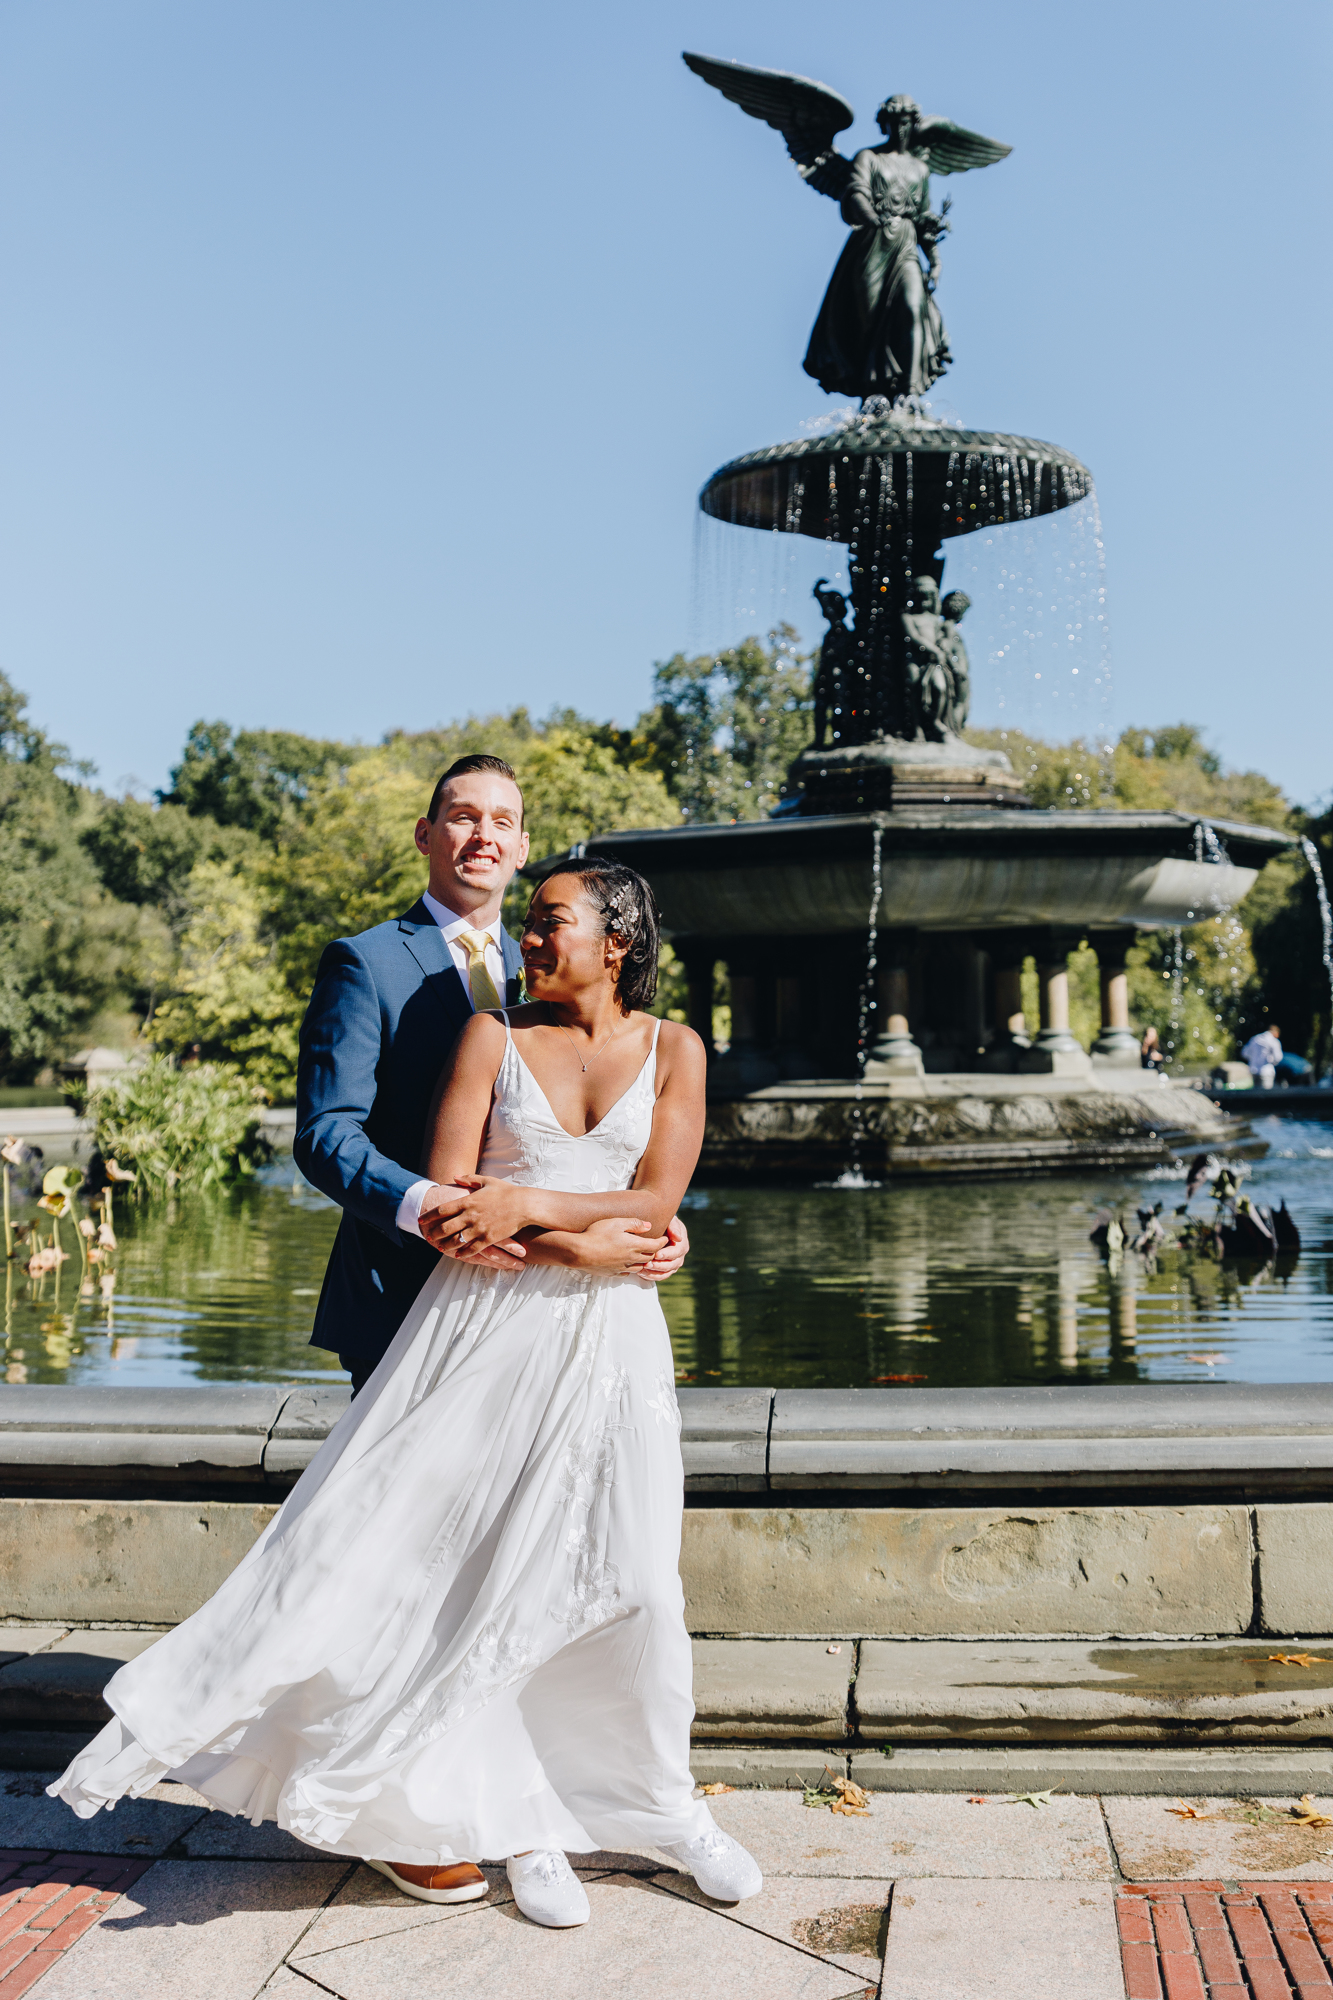 Bethesda Fountain wedding photos in New York